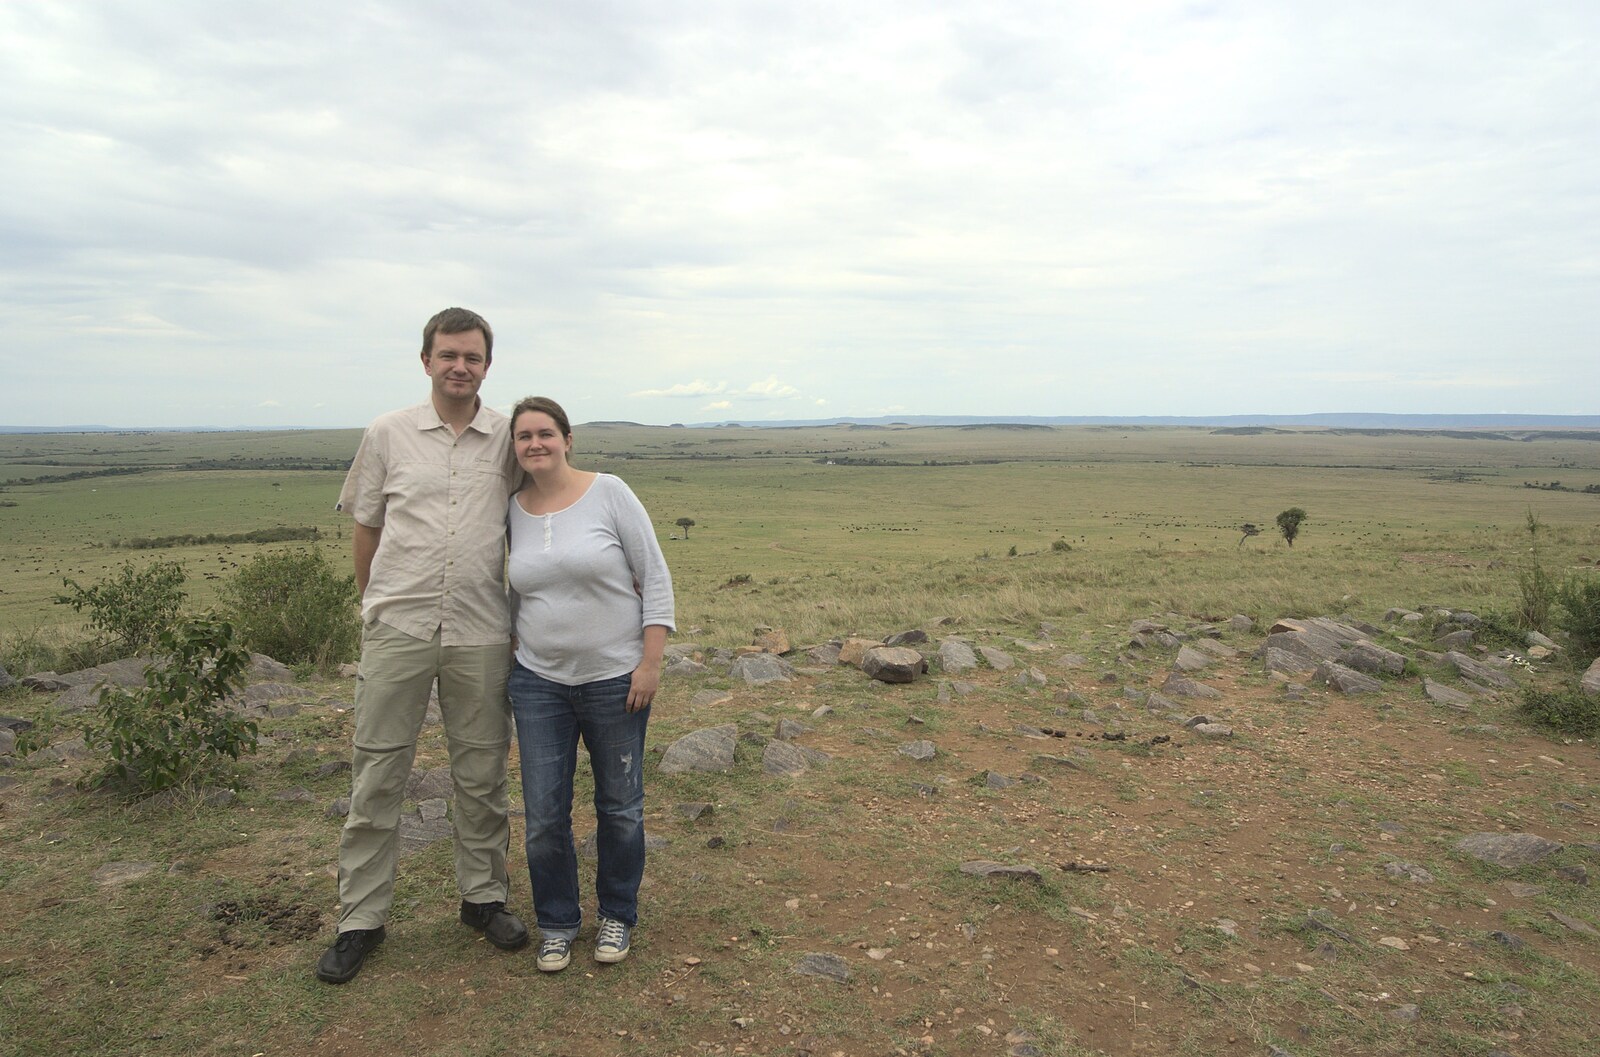 Nosher and Isobel on the top of Lookout Bluff from Maasai Mara Safari and a Maasai Village, Ololaimutia, Kenya - 5th November 2010